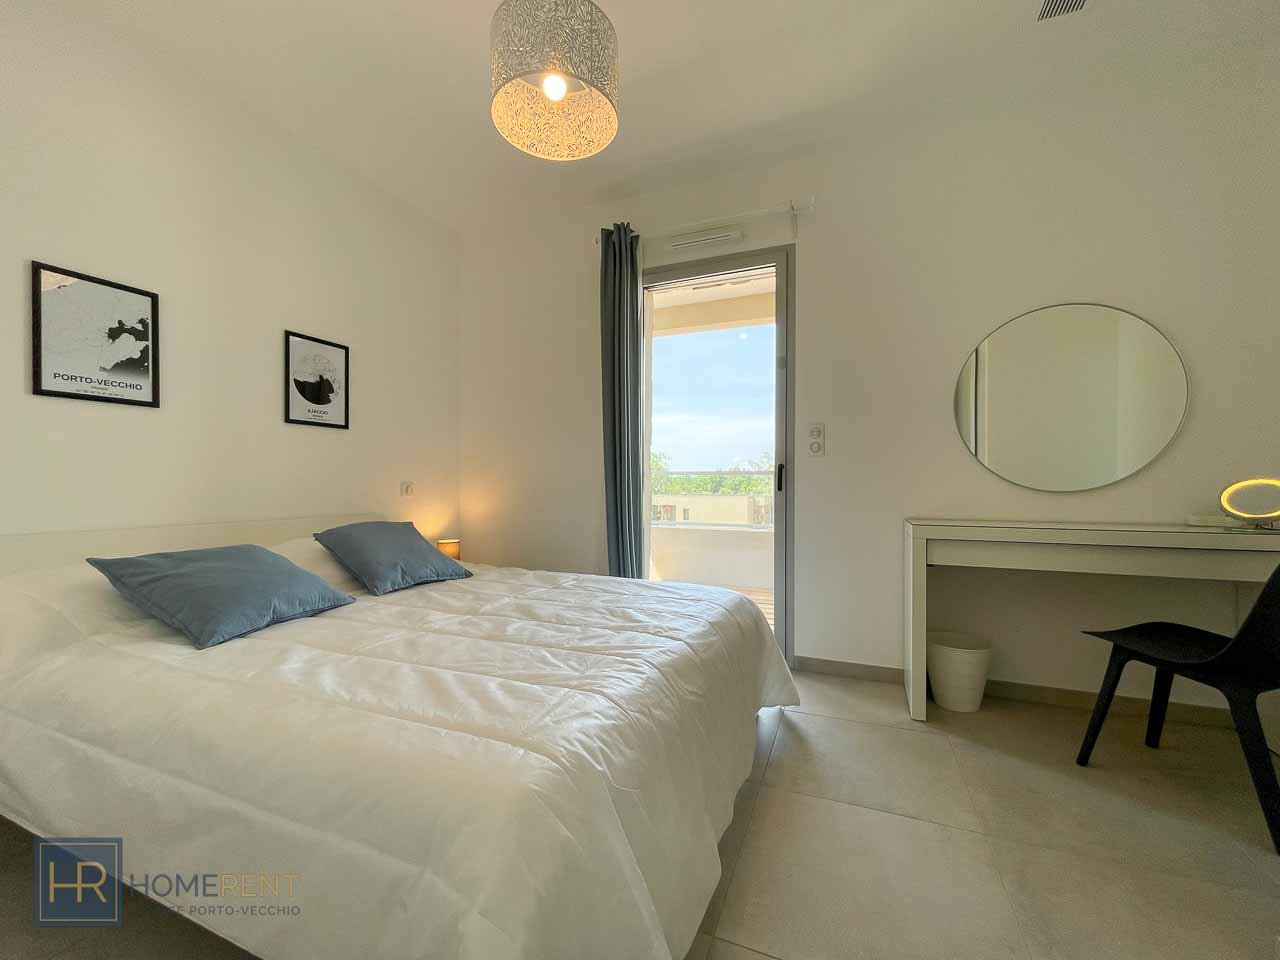 Chambre lit double appartement marina di Cala Rossa Porto Vecchio Lecci plage à pied piscine chauffée résidence calme et moderne luxe vacances en Corse du sud santa giulia